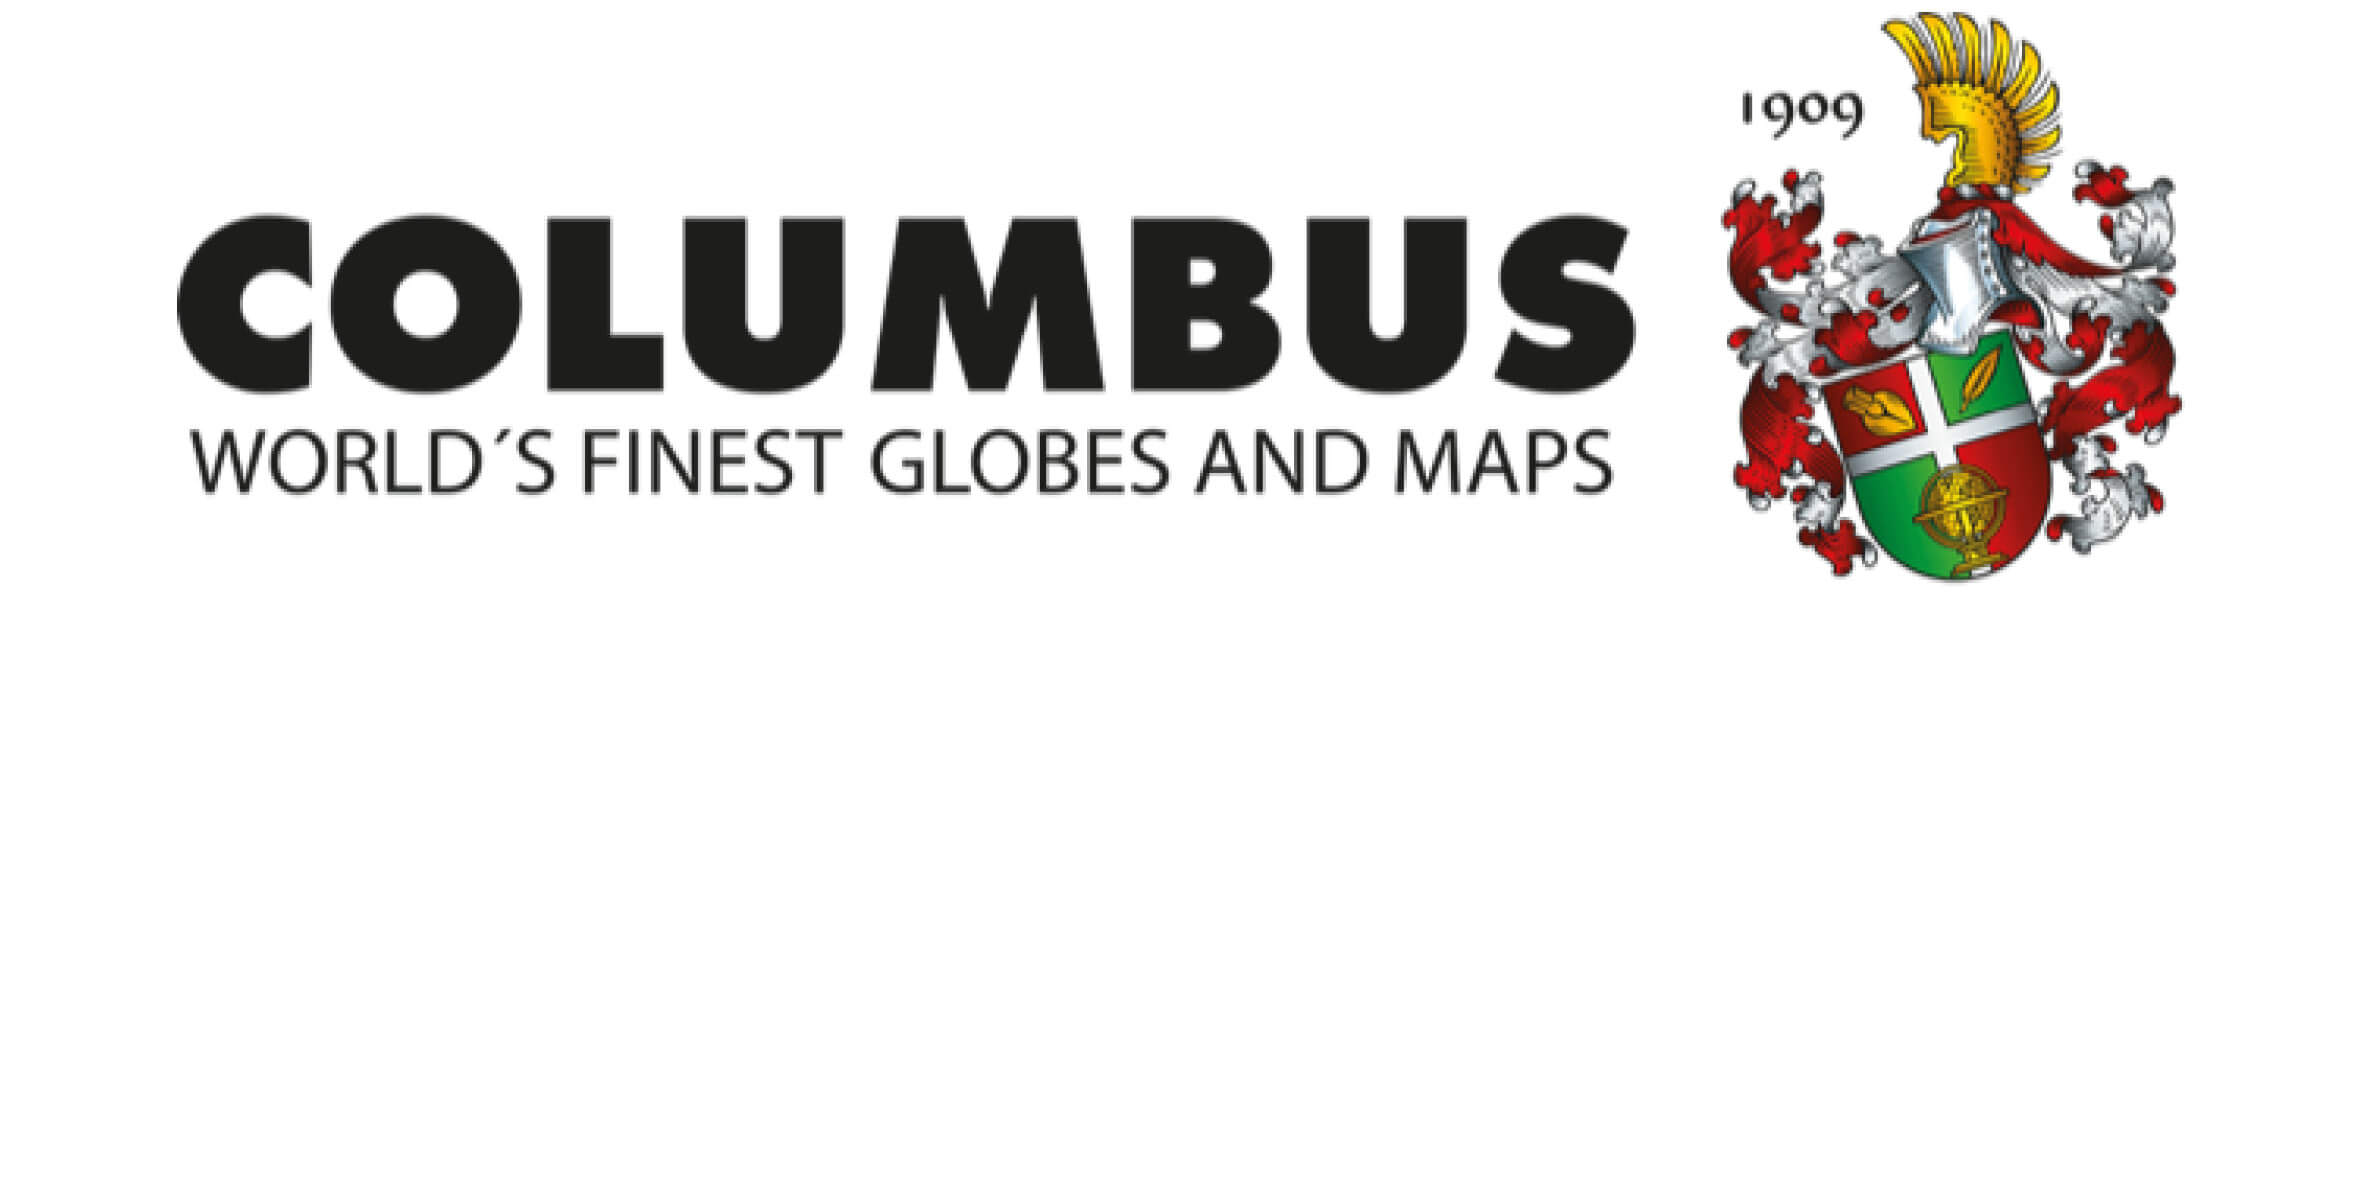 Columbus Globus